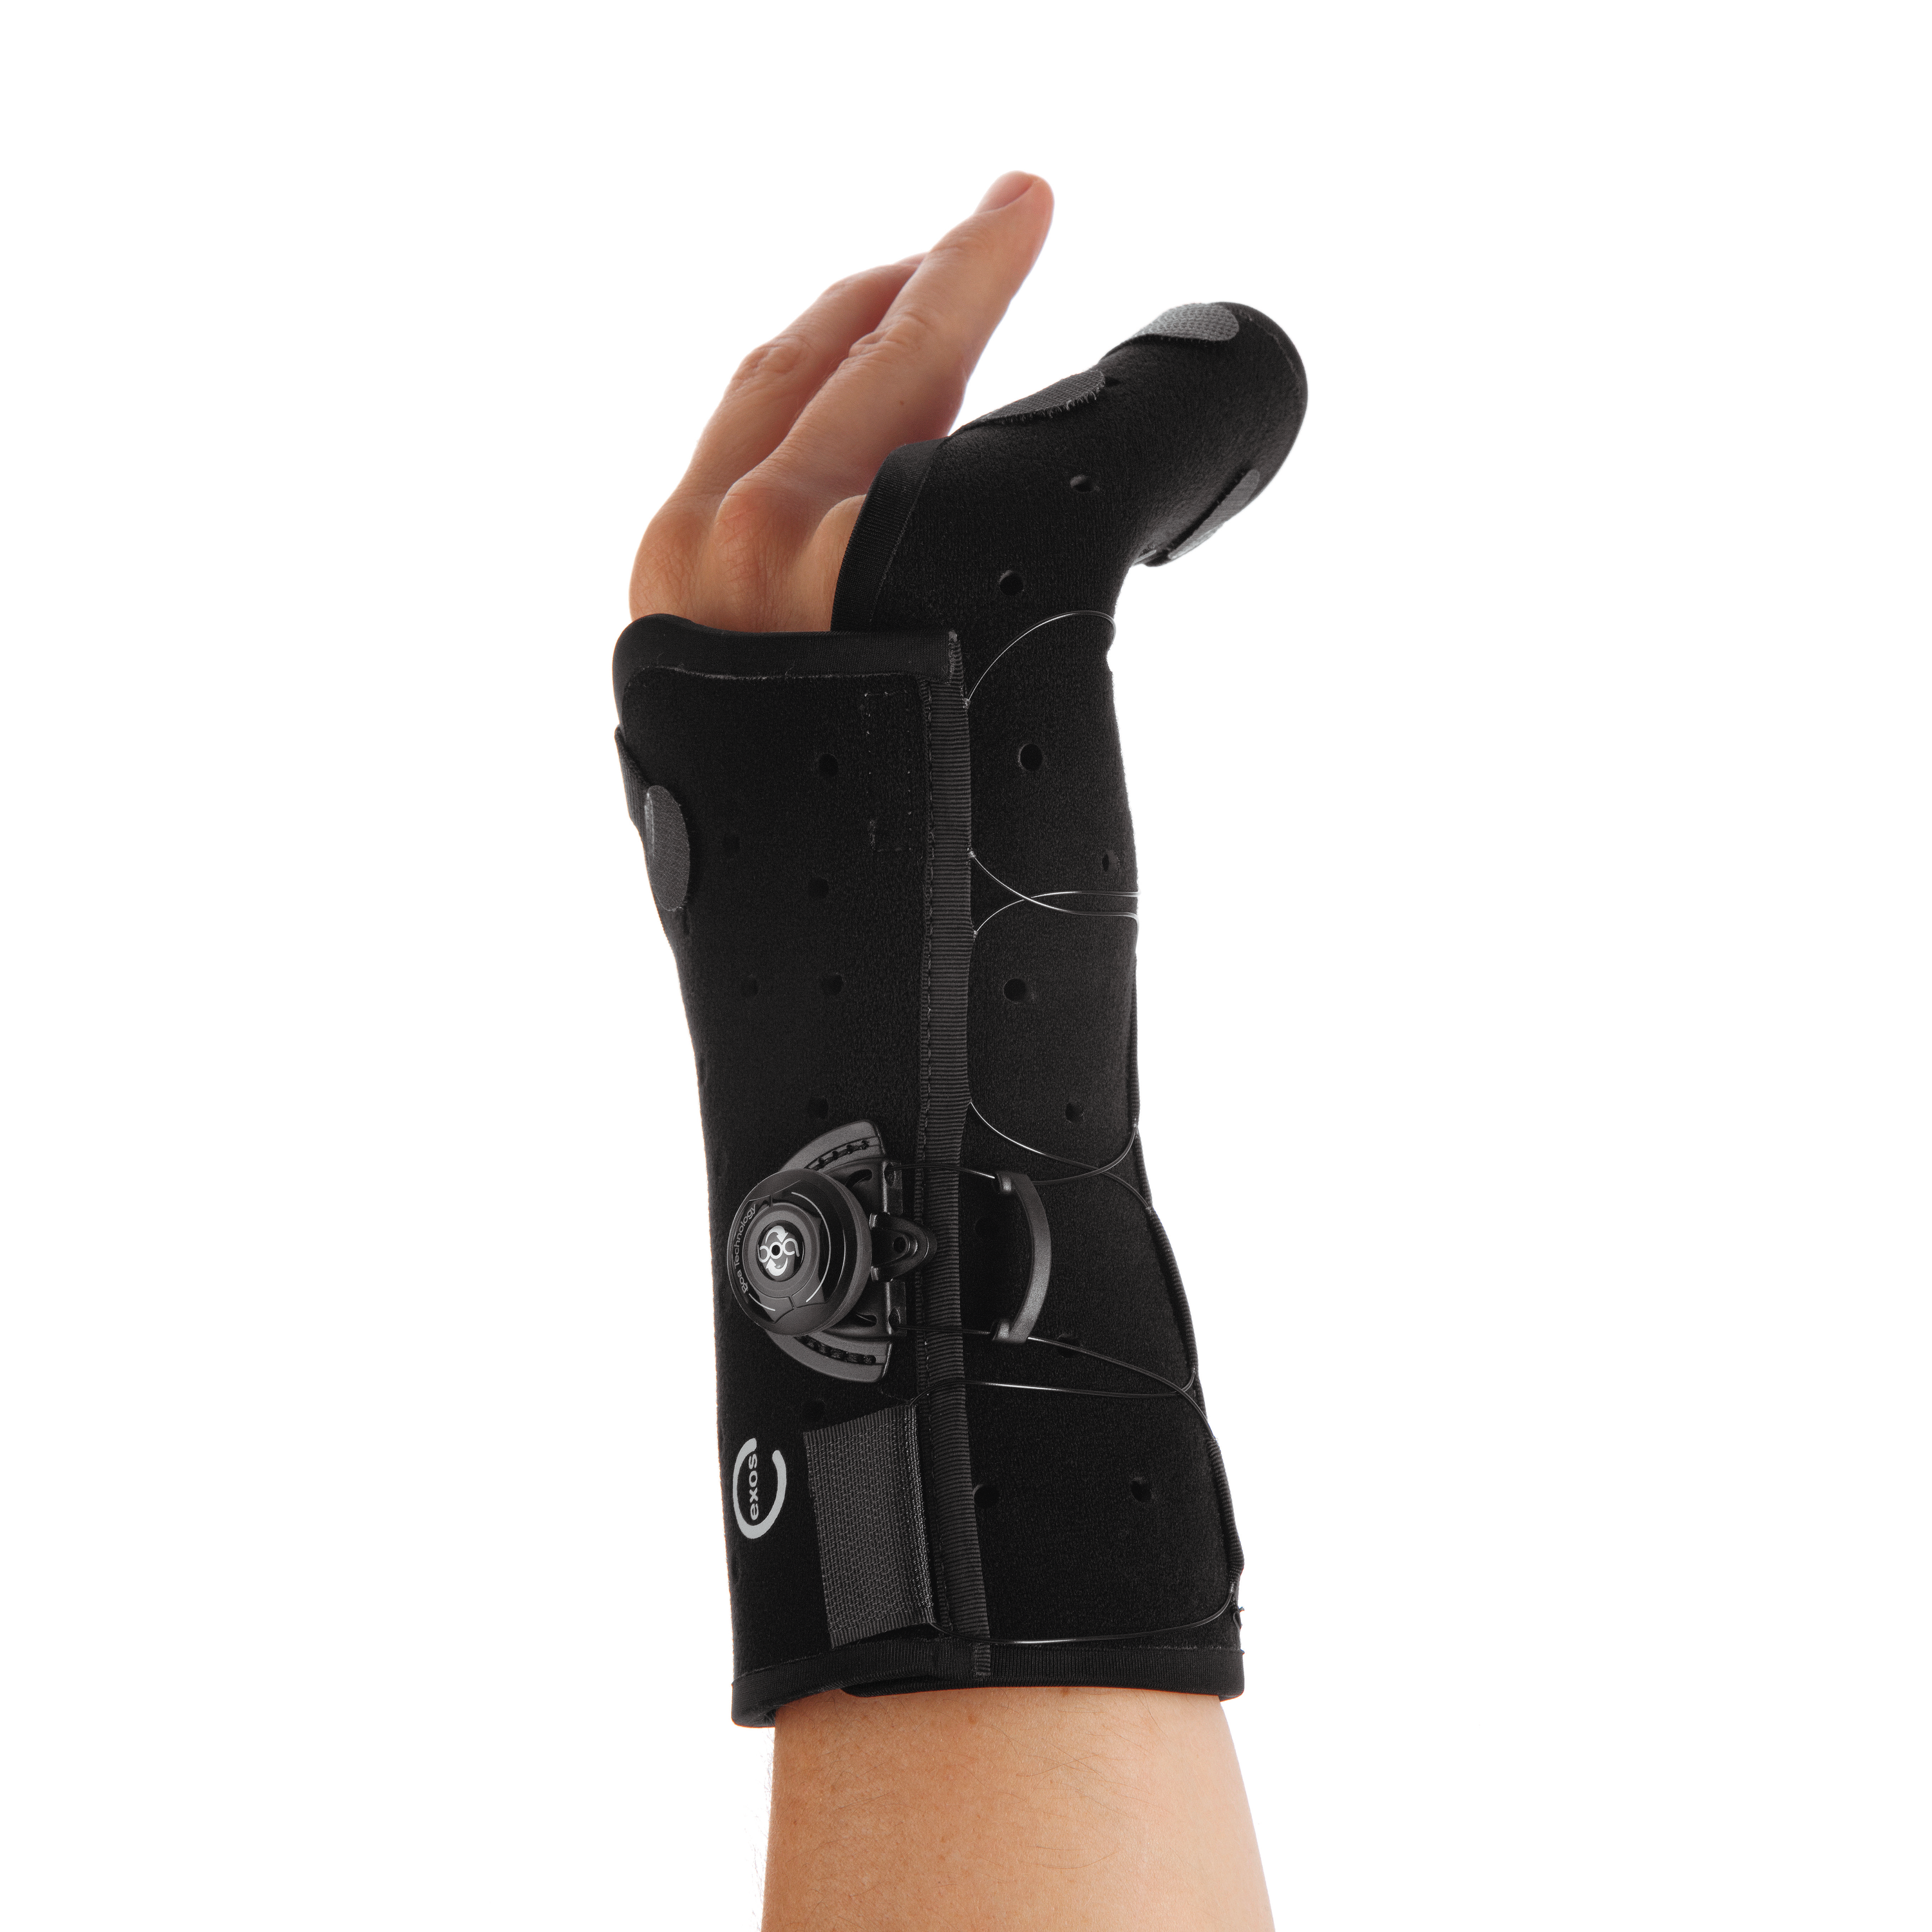 Produktbild EXOS® Hand-/Unterarmorthese mit Fixierung der Finger 4. & 5., mit BOA® Thermoplastisch verformbare Hand-/Unterarmorthese zur Immobilisierung der Mittelhand und der Finger 4 & 5